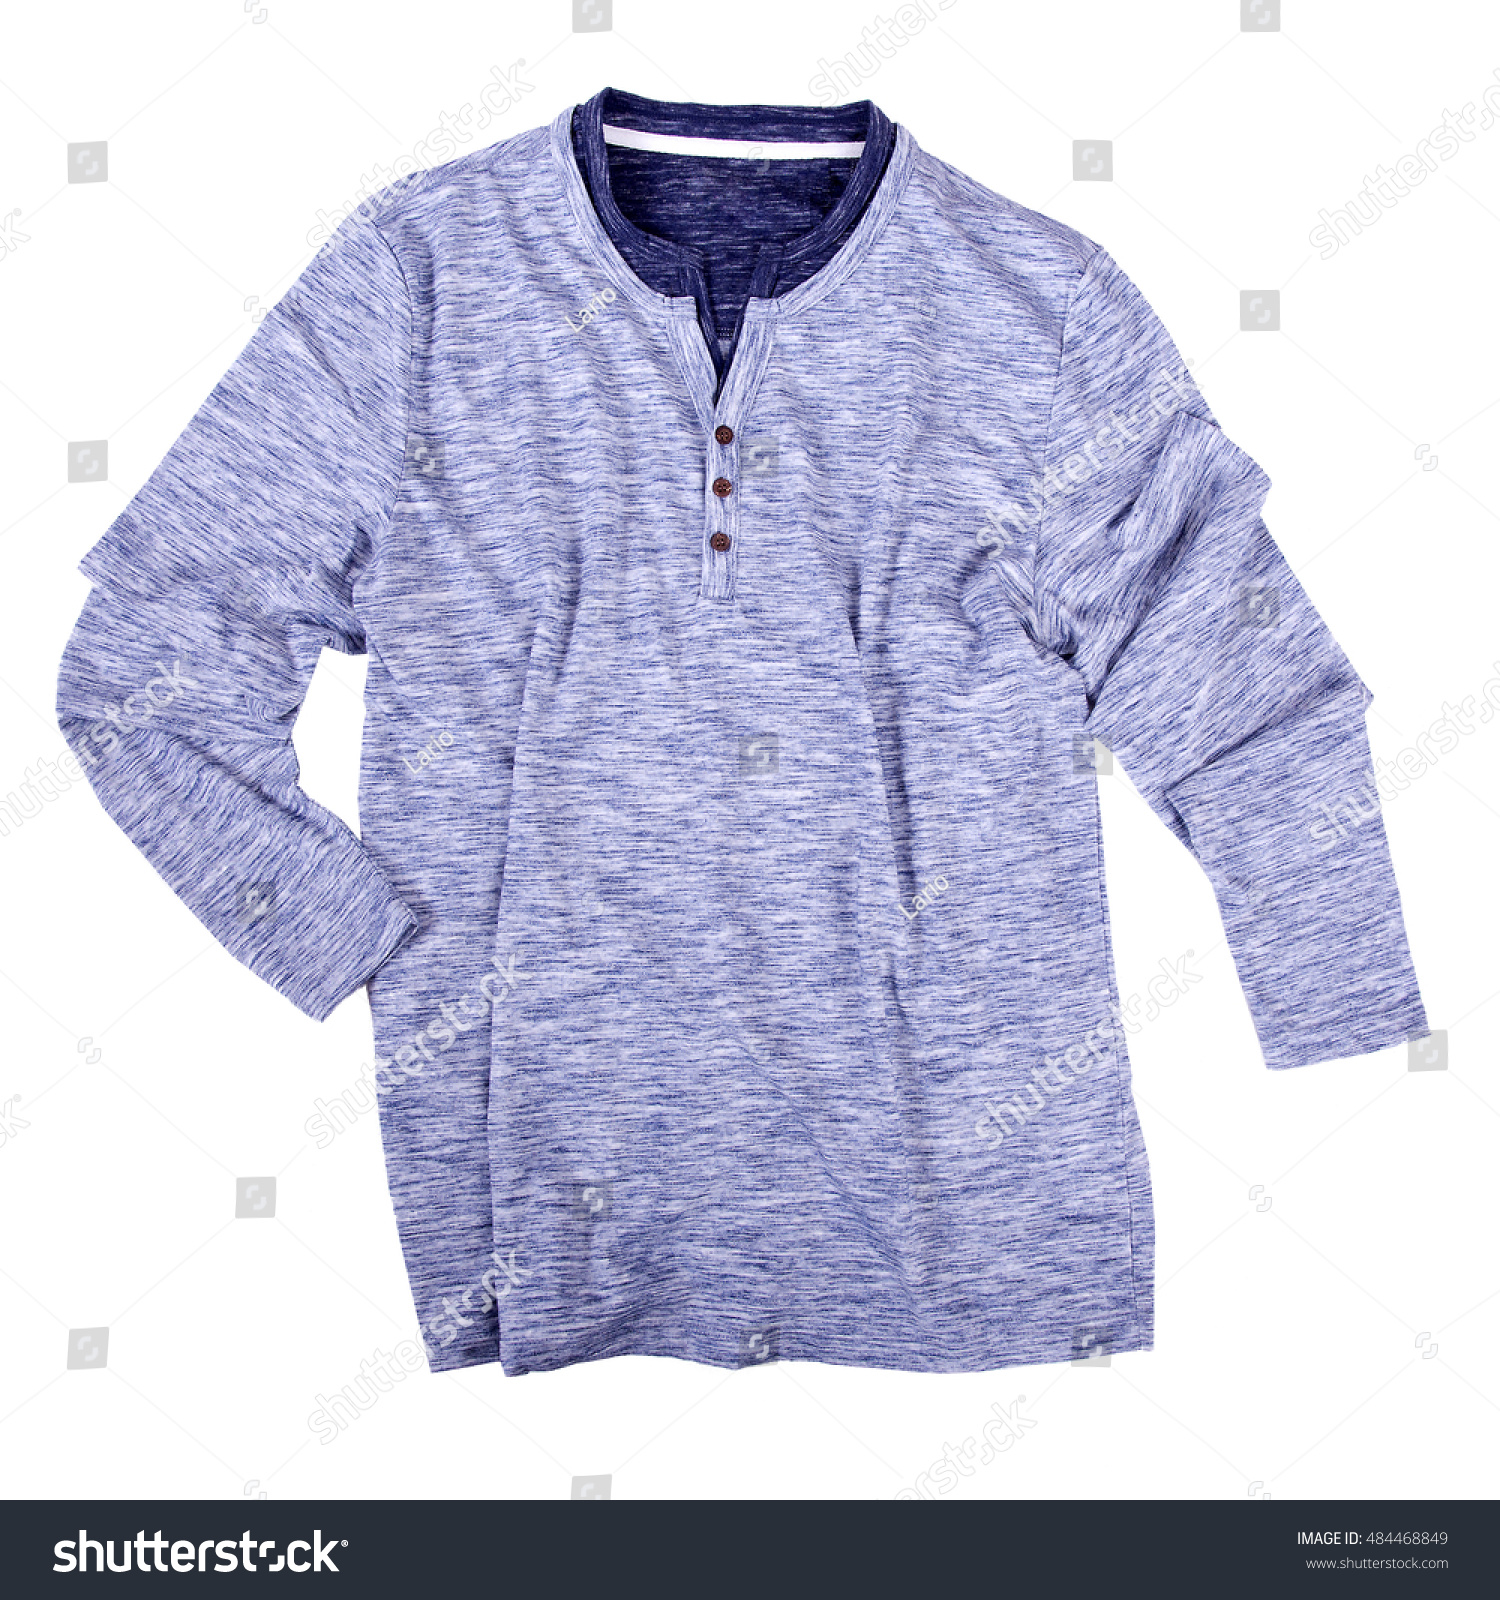 Men'S Knitted Melange Shirt Stock Photo 484468849 : Shutterstock